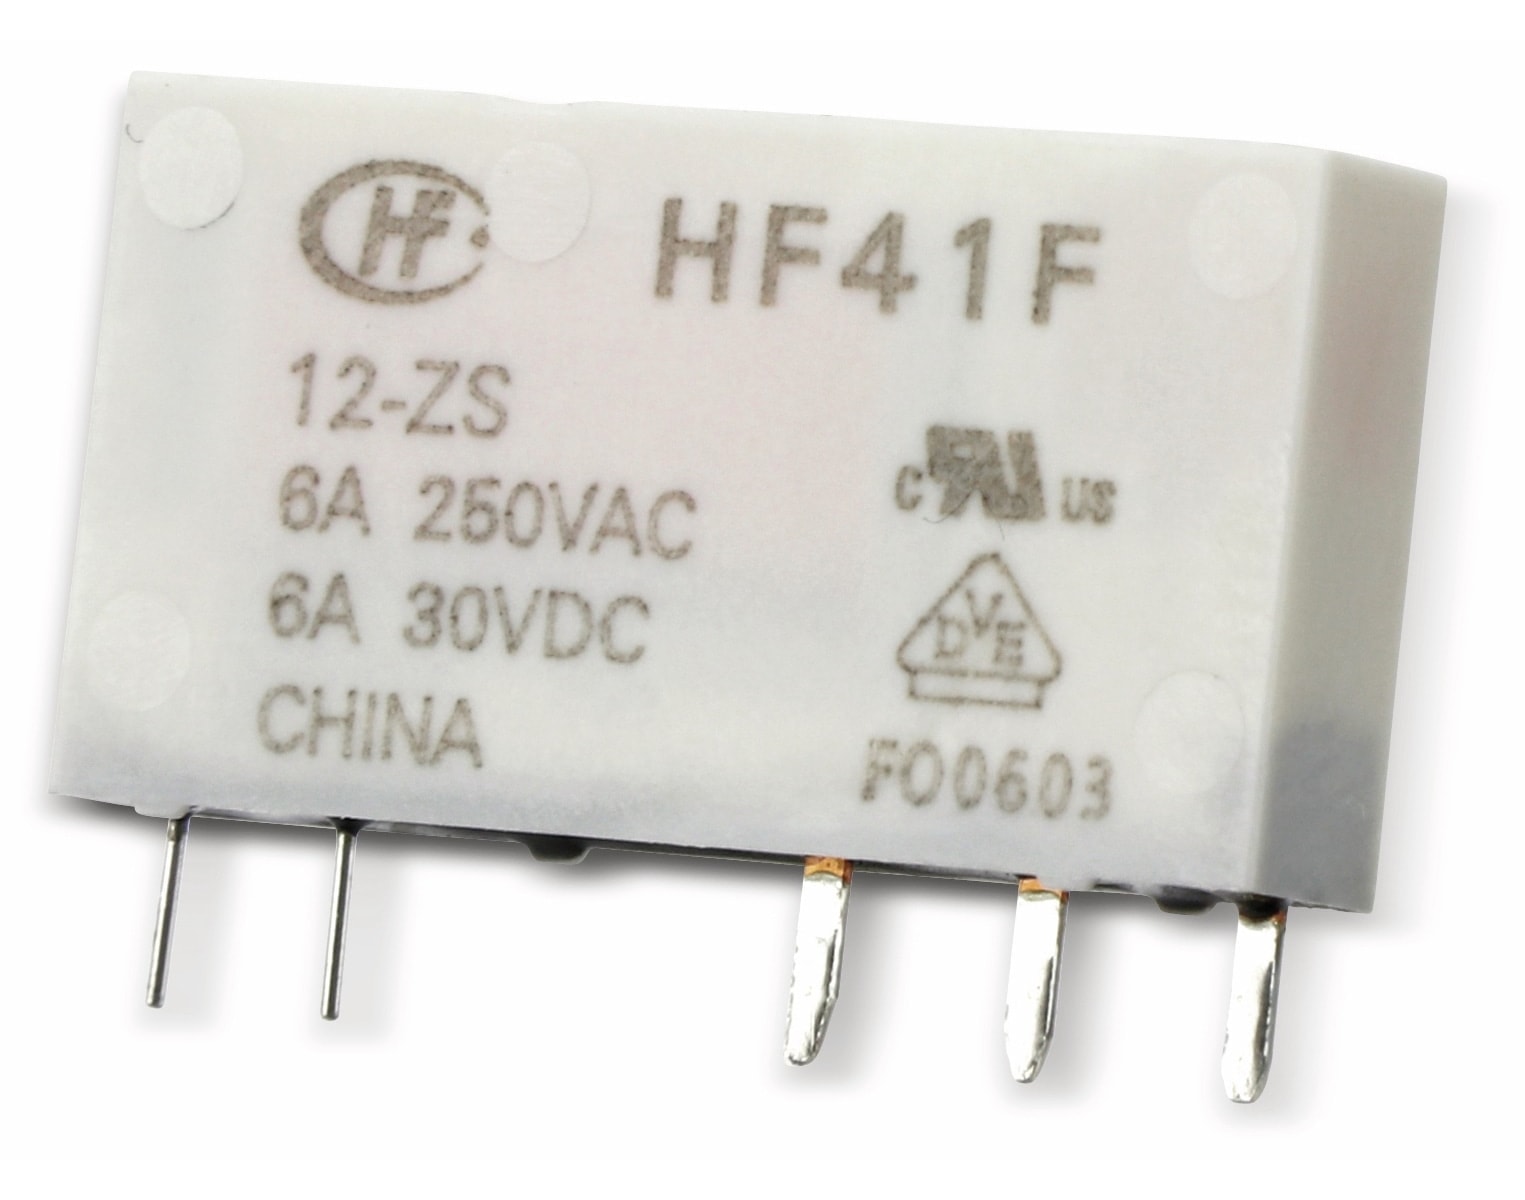 HONGFA Printrelais HF41F/024-ZS